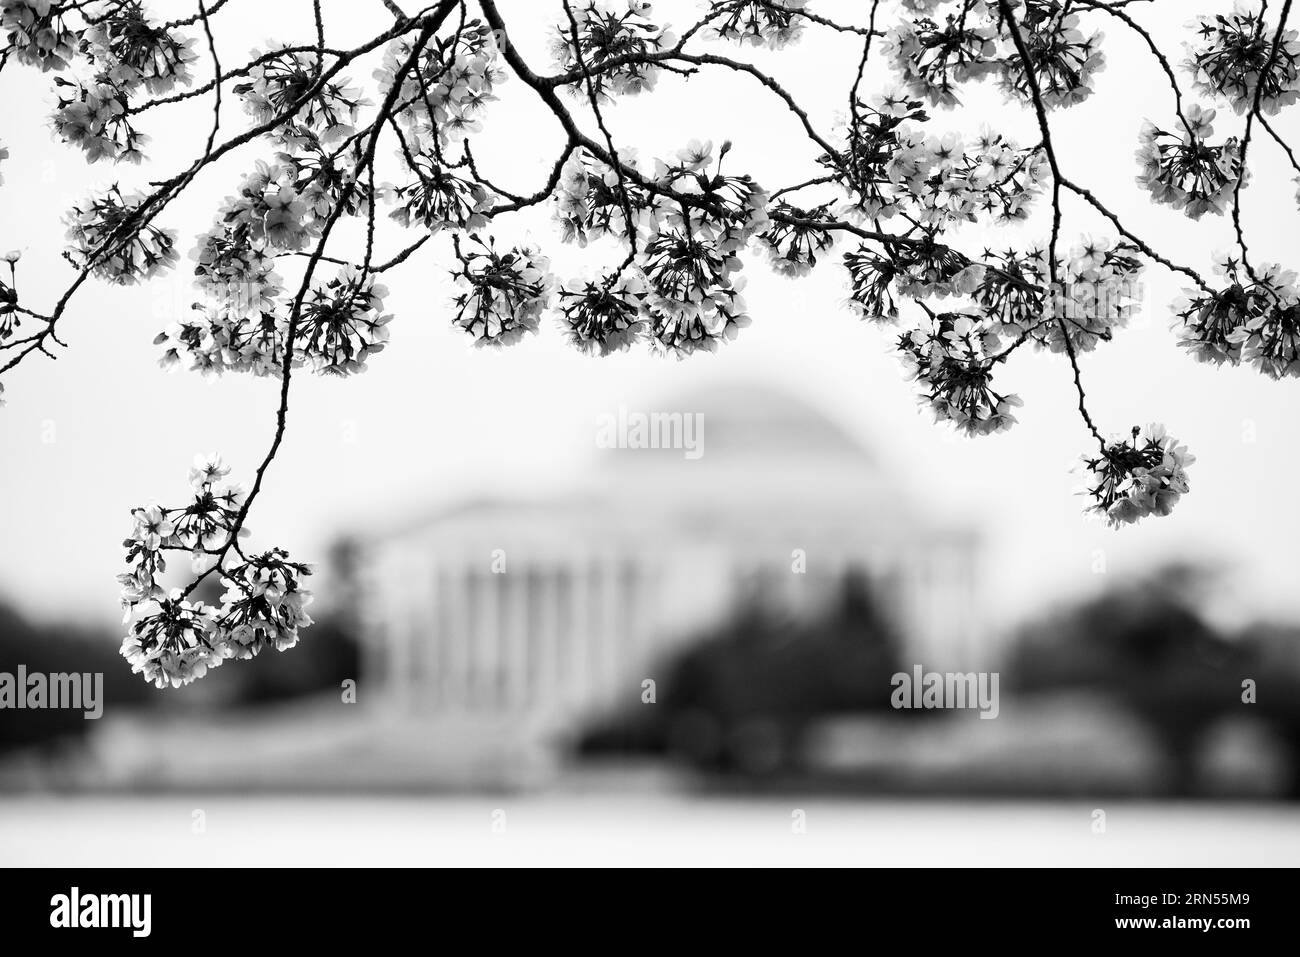 WASHINGTON DC, Vereinigte Staaten – das Jefferson Memorial steht umgeben von leuchtenden Kirschblüten und markiert den Beginn des Frühlings in der Hauptstadt. Diese Blüten, ein Geschenk Japans aus dem Jahr 1912, bieten eine malerische Kulisse für das Denkmal, das dem dritten US-Präsidenten Thomas Jefferson gewidmet ist und die Verschmelzung von natürlicher Schönheit und amerikanischer Geschichte hervorhebt. Stockfoto